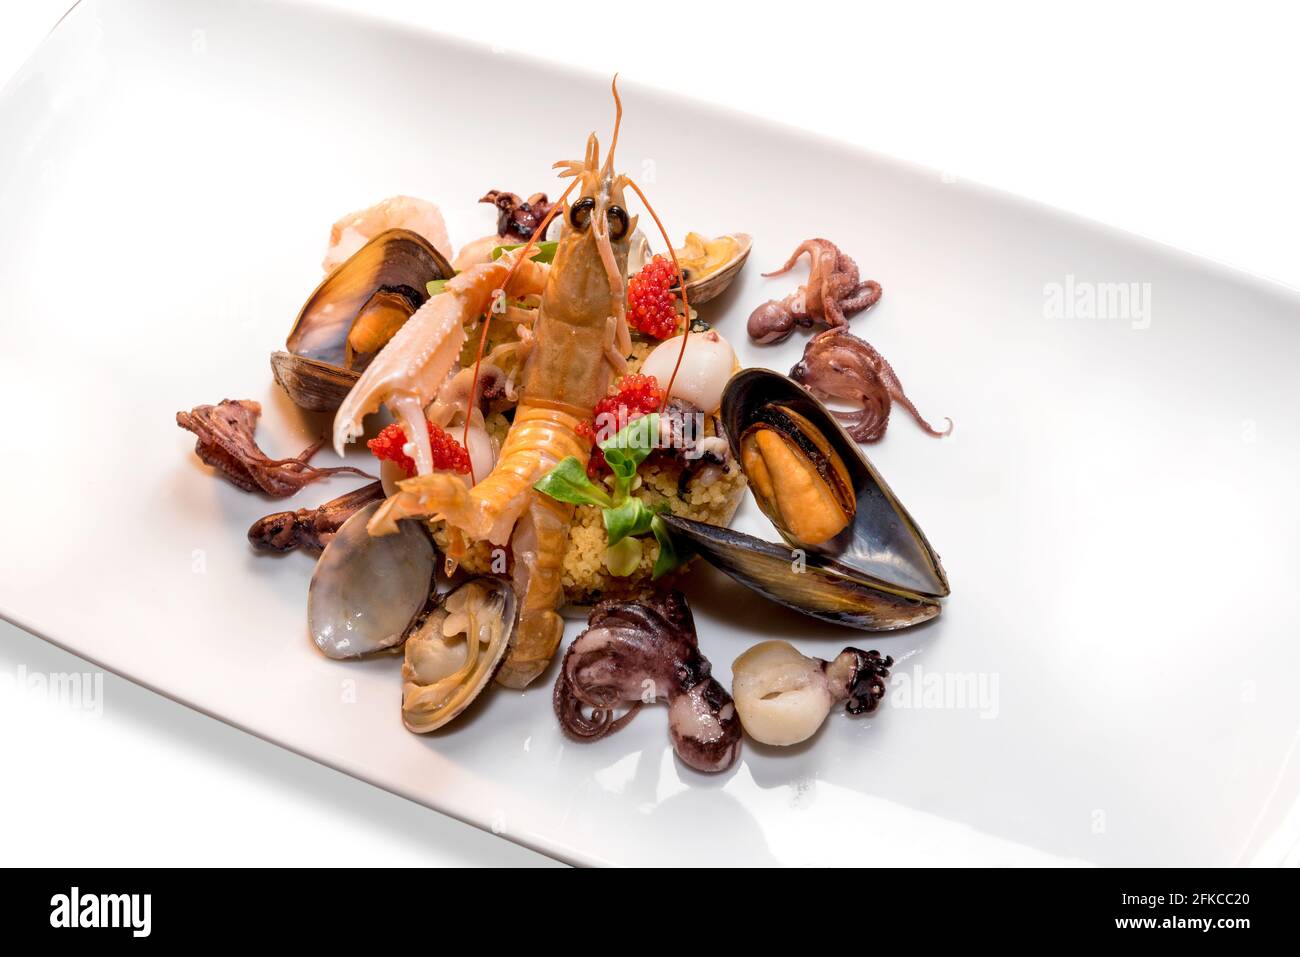 Fruits de mer et coquillages avec cous, plat coloré avec scampi, moules, palourdes, poulpe et caviar rouge Banque D'Images